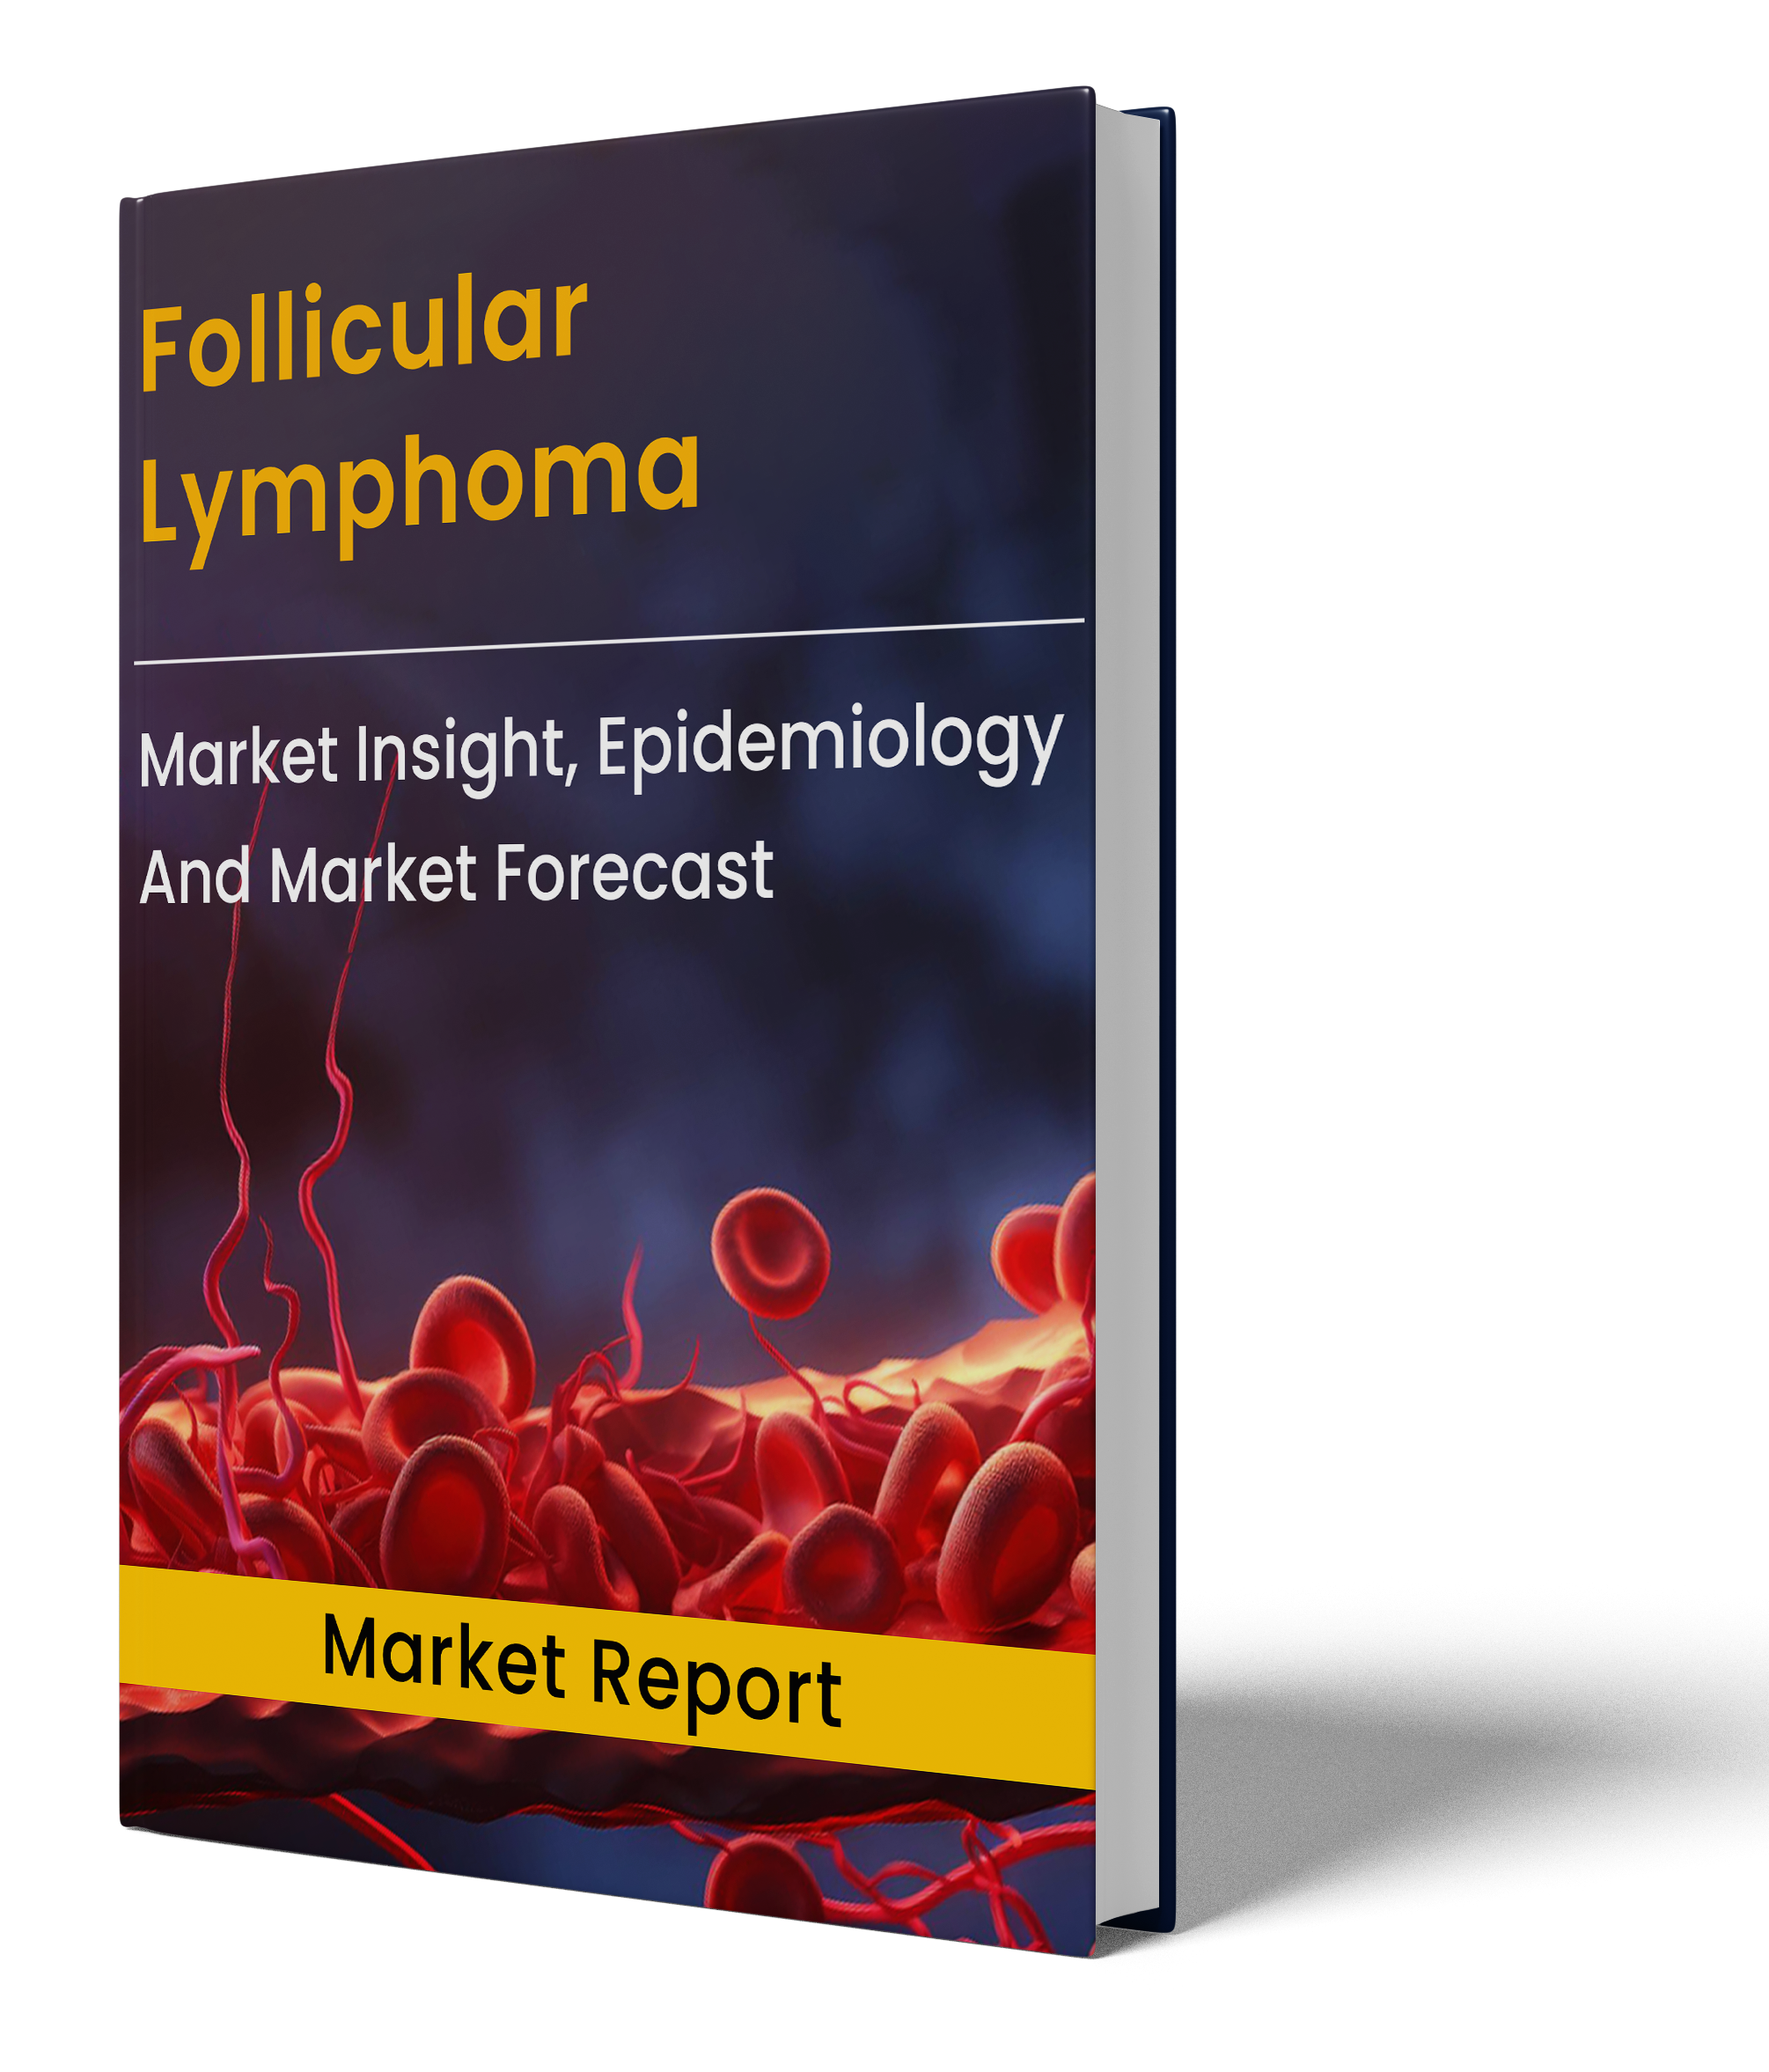 Follicular Lymphoma Market Report